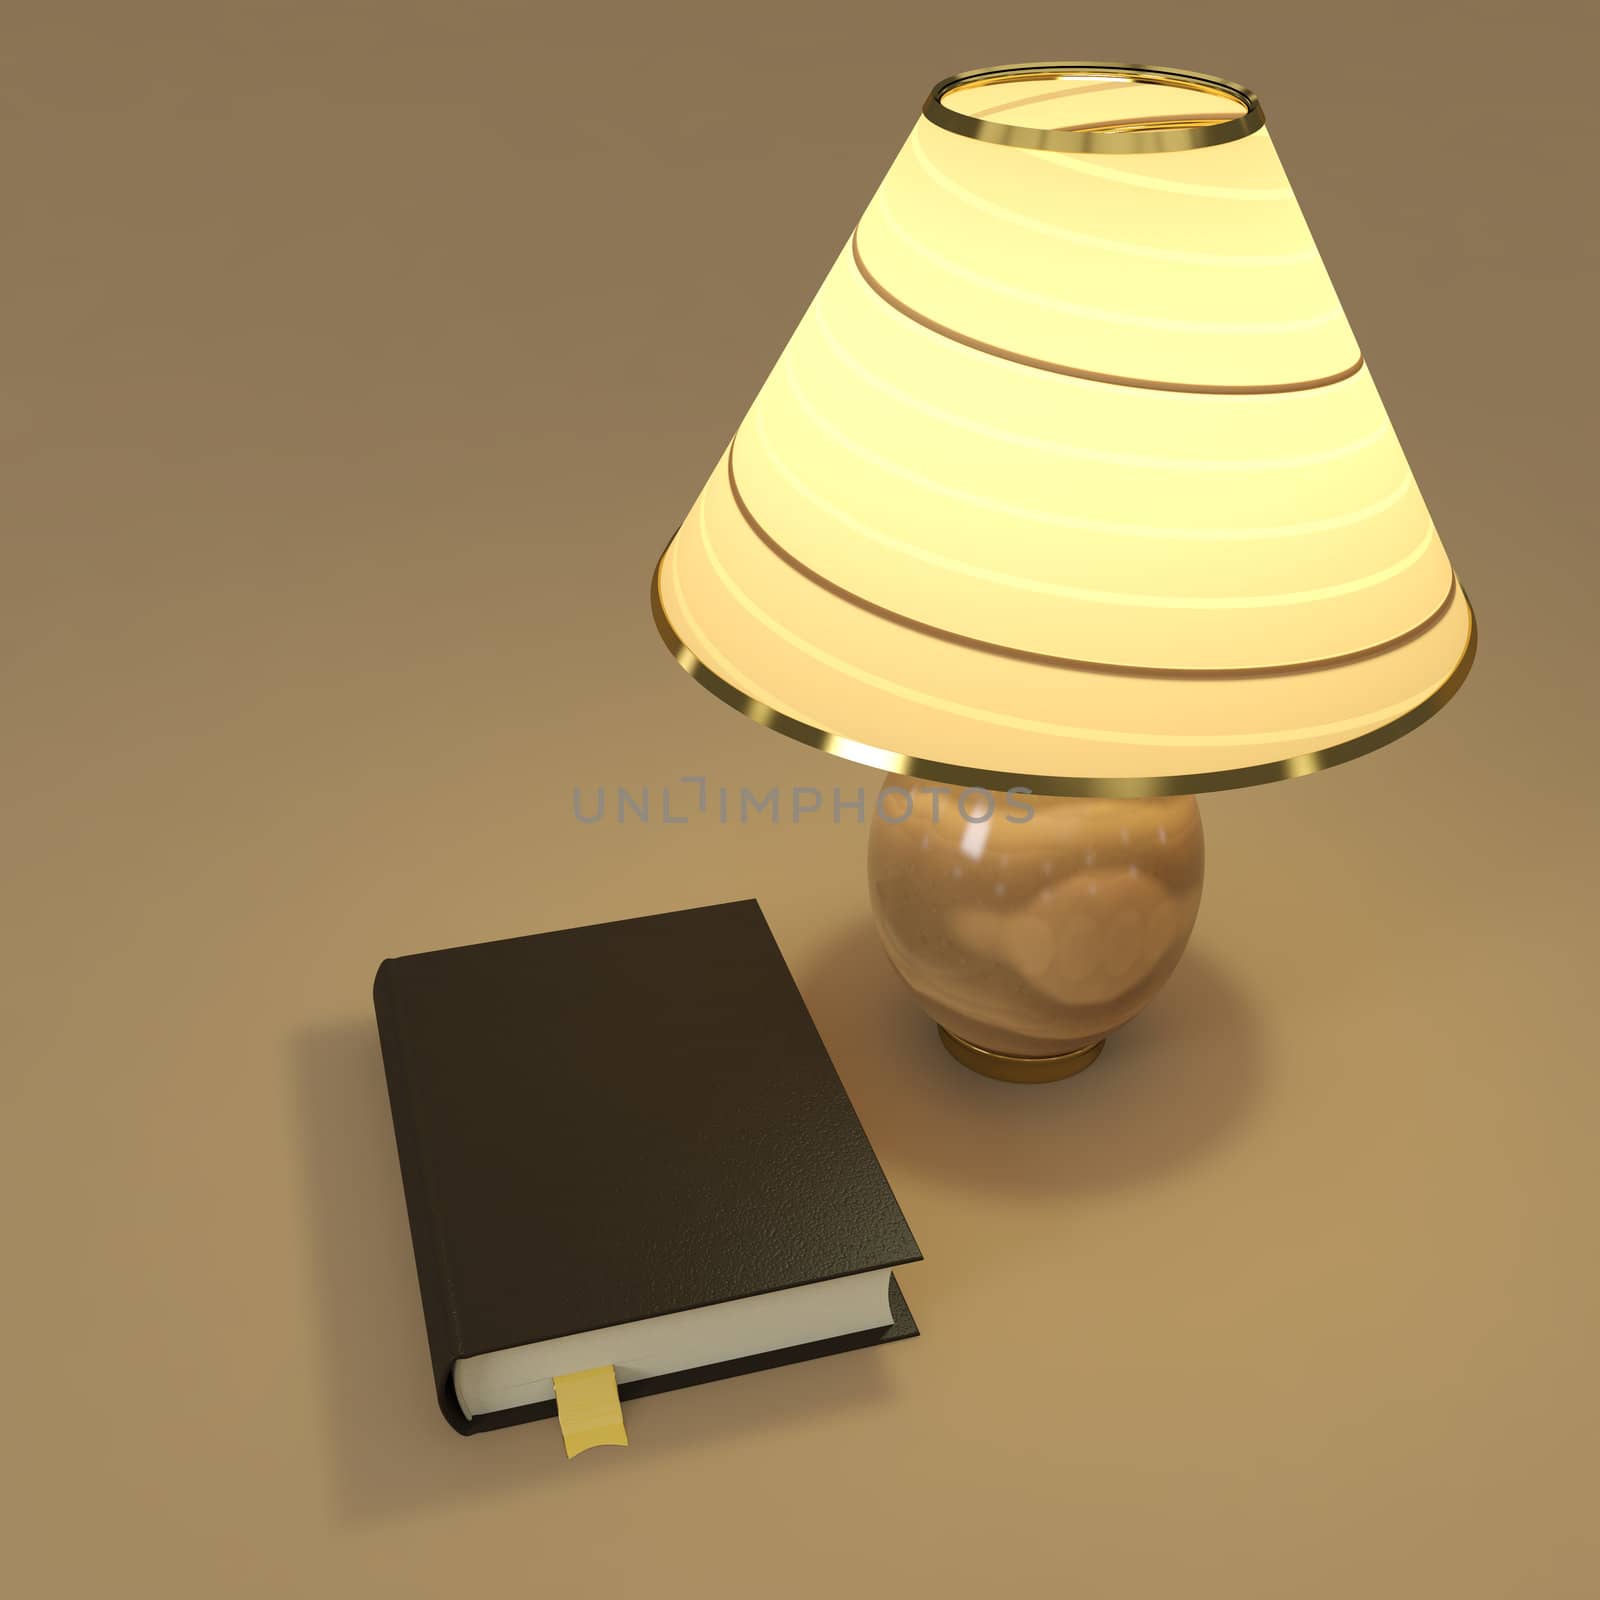 Nameless book near lighting table lamp. 3d render.